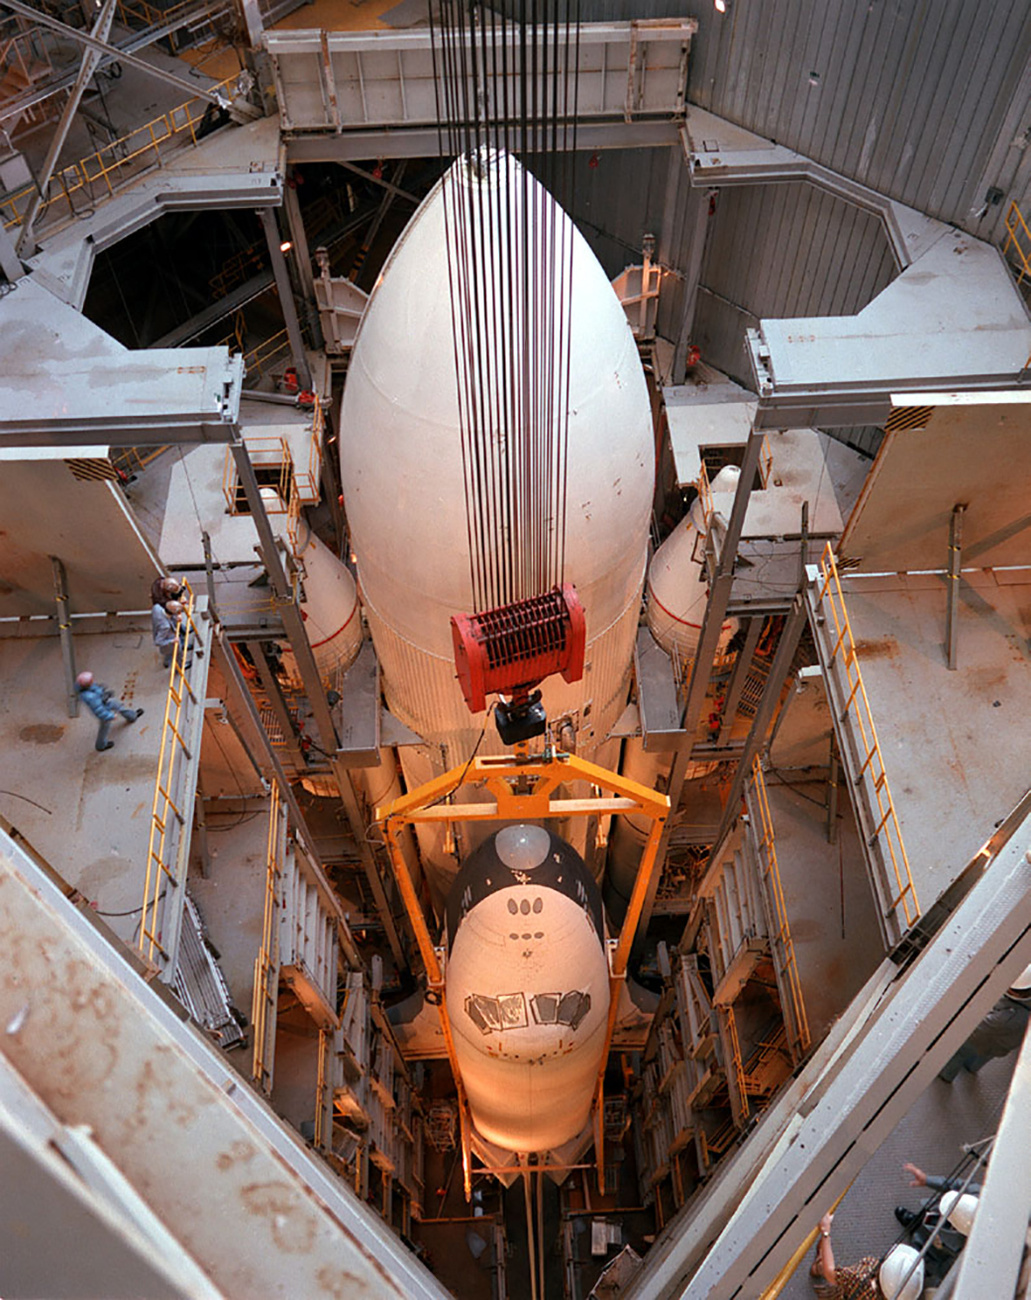 Az Intrepid múzeum kapta meg végül az amerikai űrprogram kevéssé ismert, de azért mégiscsak fontos, űrben sosem járt űrhajóját. 